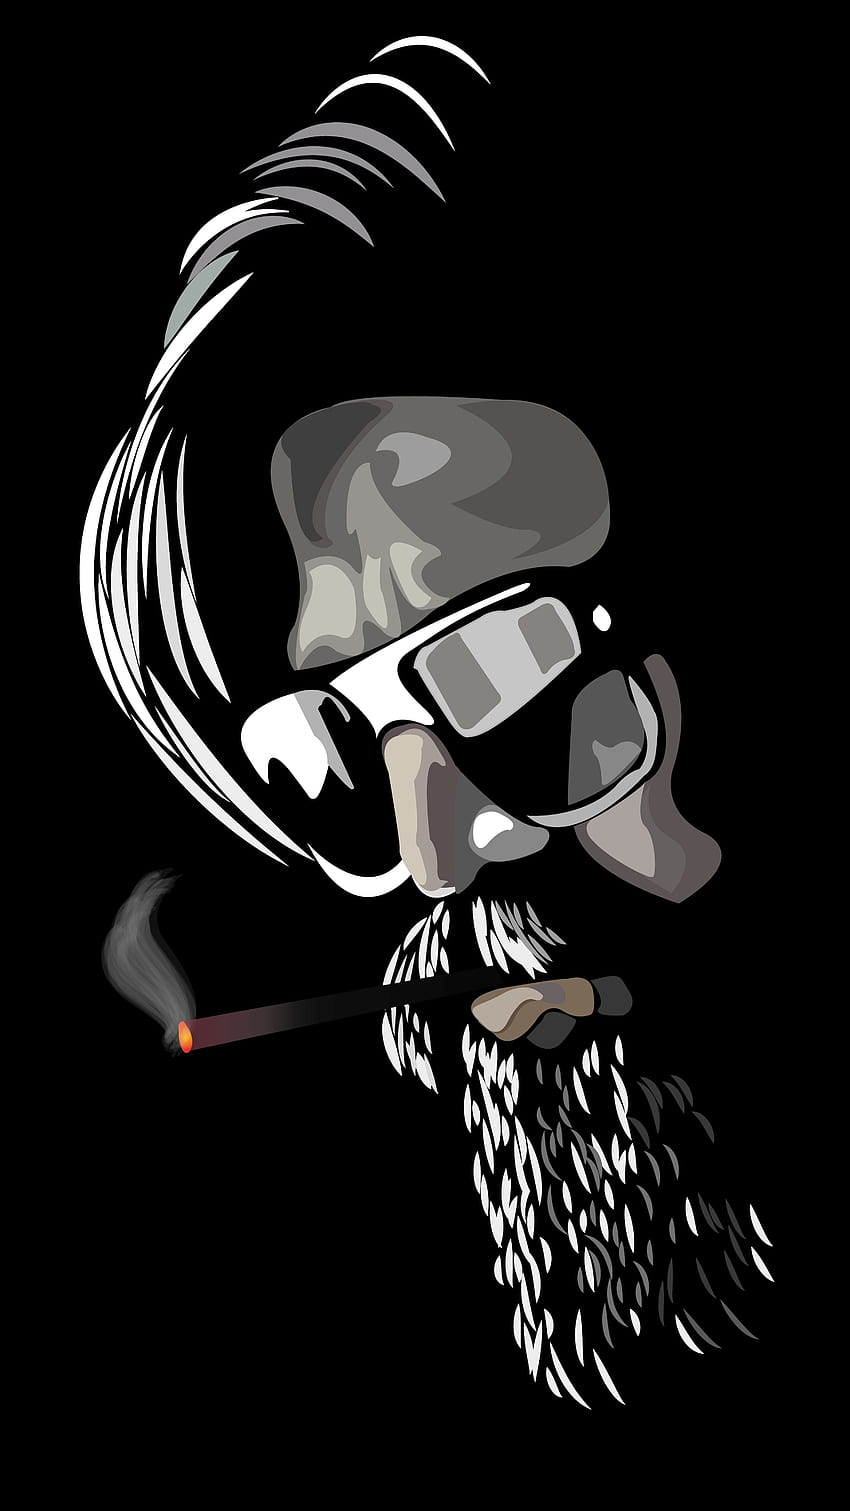 Pahlawan Kgf, Hitam Putih, merokok, wajah wallpaper ponsel HD